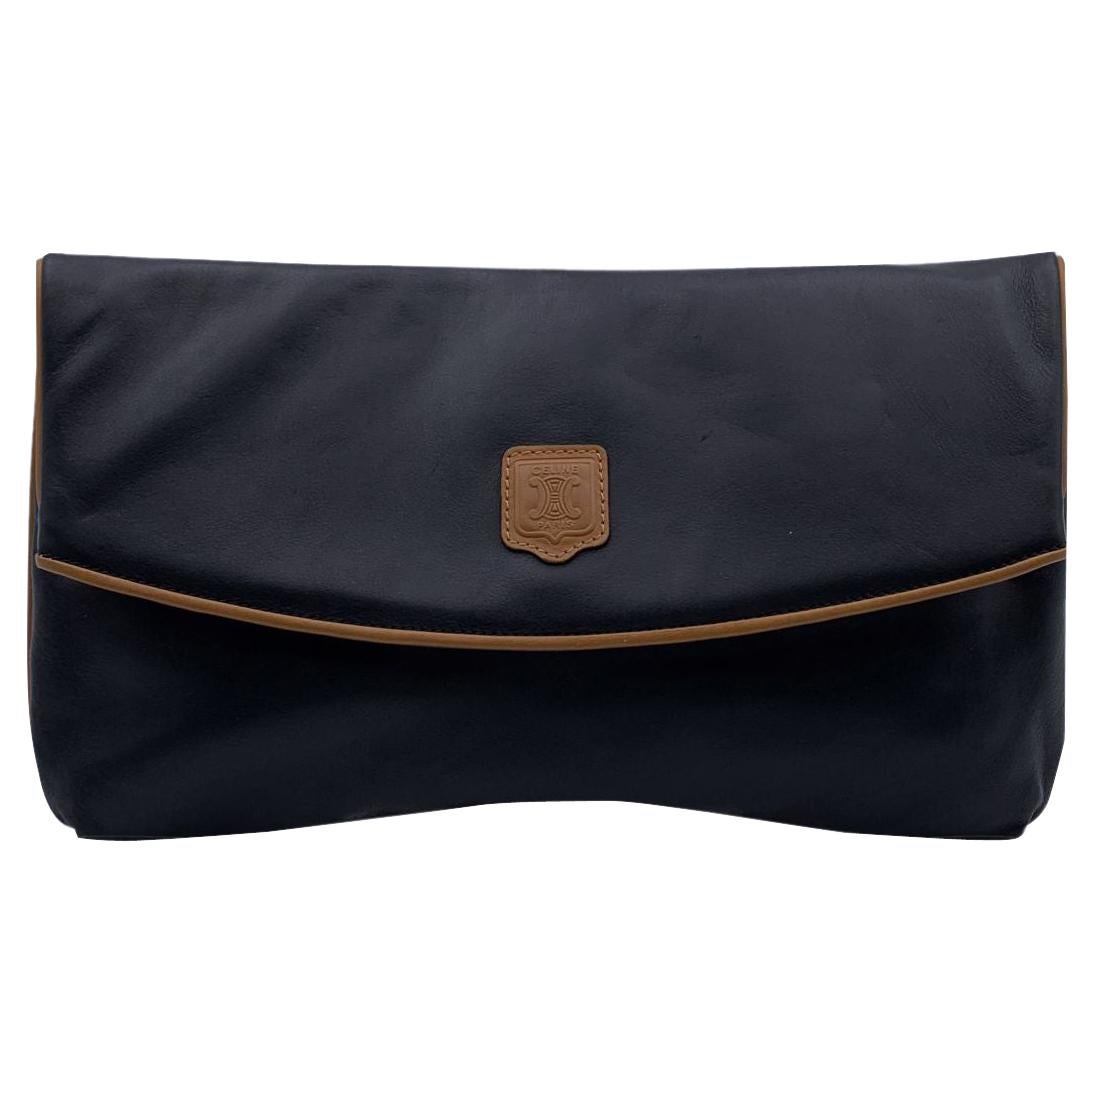 Celine Vintage Black Leather Foldable Clutch Bag Handbag